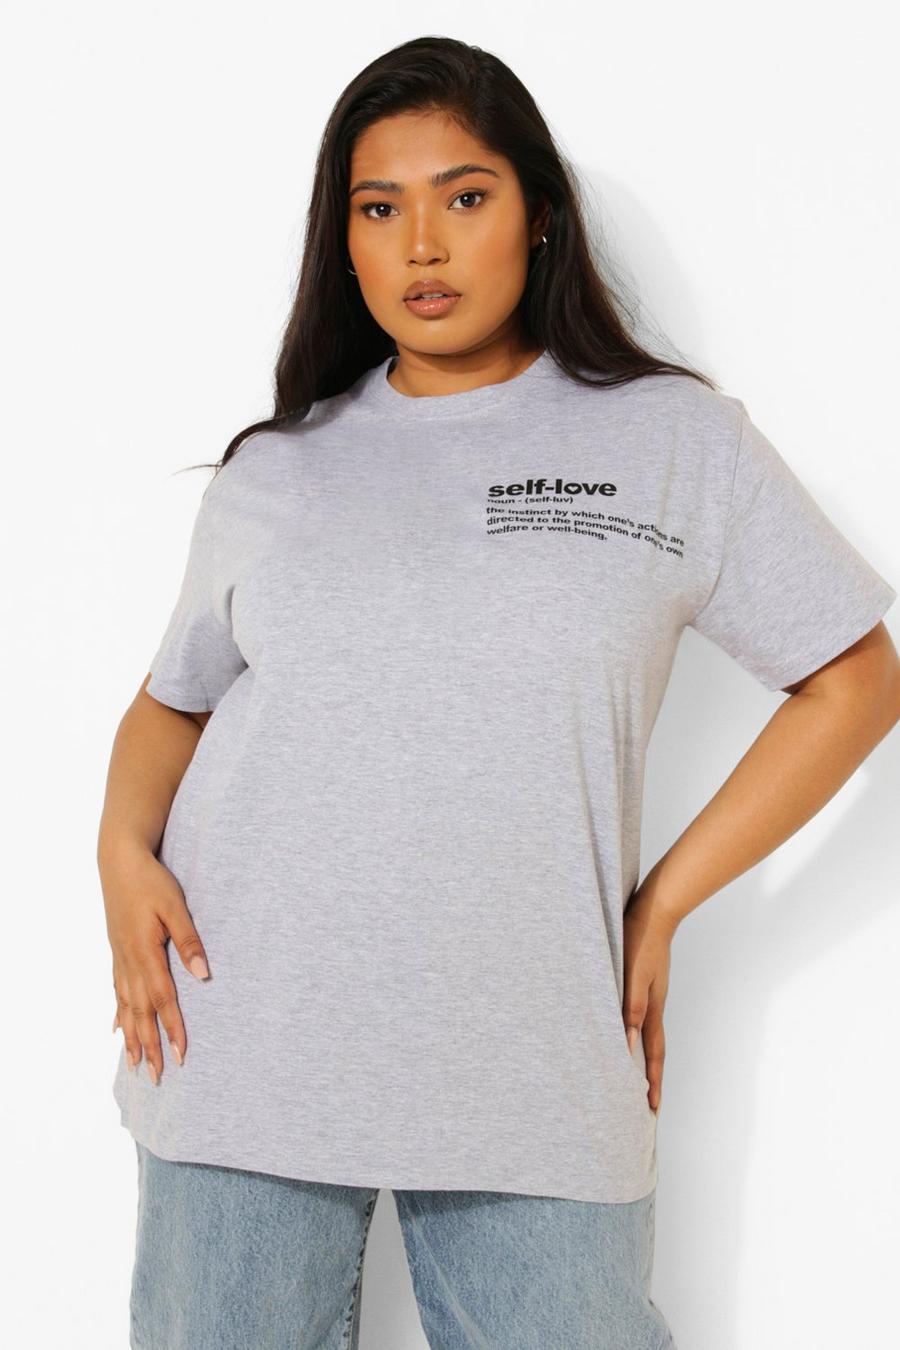 T-shirt Plus Size con slogan Self Love stampato ad altezza taschino, Grigio mélange